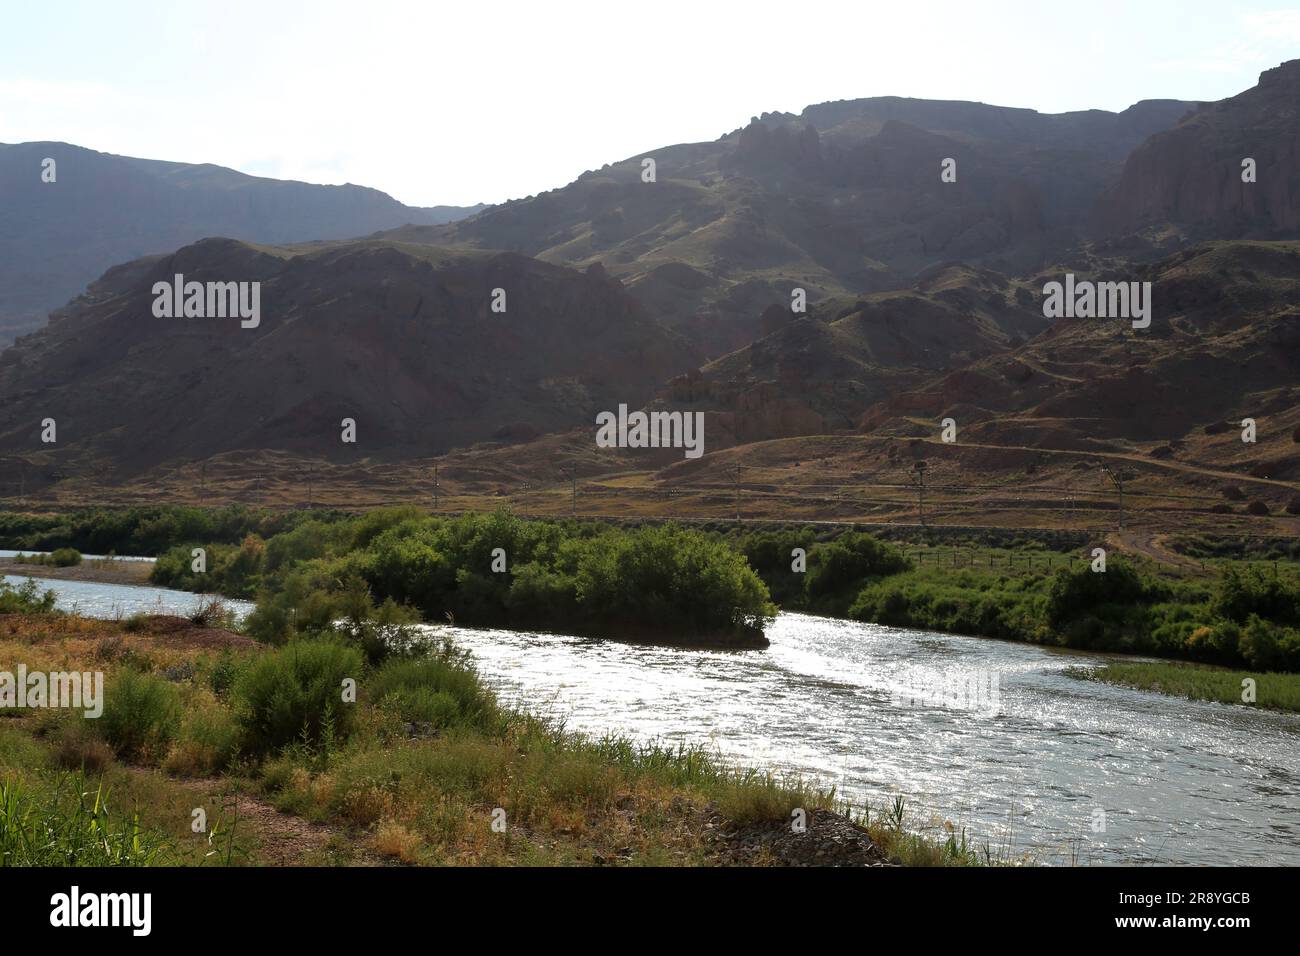 21 de junio de 2023, Jolfa, Azerbaiyán Oriental, Irán: Una vista del río Aras en la frontera entre el noroeste de Irán y Azerbaiyán. El Aras (los Araks, Arax, Araxes, o Araz) es un río en el Cáucaso. Se levanta en el este de Turquía y fluye a lo largo de las fronteras entre Turquía y Armenia, entre Turquía y el exclave de Najicheván de Azerbaiyán, entre Irán y Azerbaiyán y Armenia, y, finalmente, a través de Azerbaiyán, donde desemboca en el río Kura. Drena el lado sur de las montañas del Cáucaso Menor, mientras que el Kura drena el lado norte del Cáucaso Menor. La longitud total del río es Foto de stock